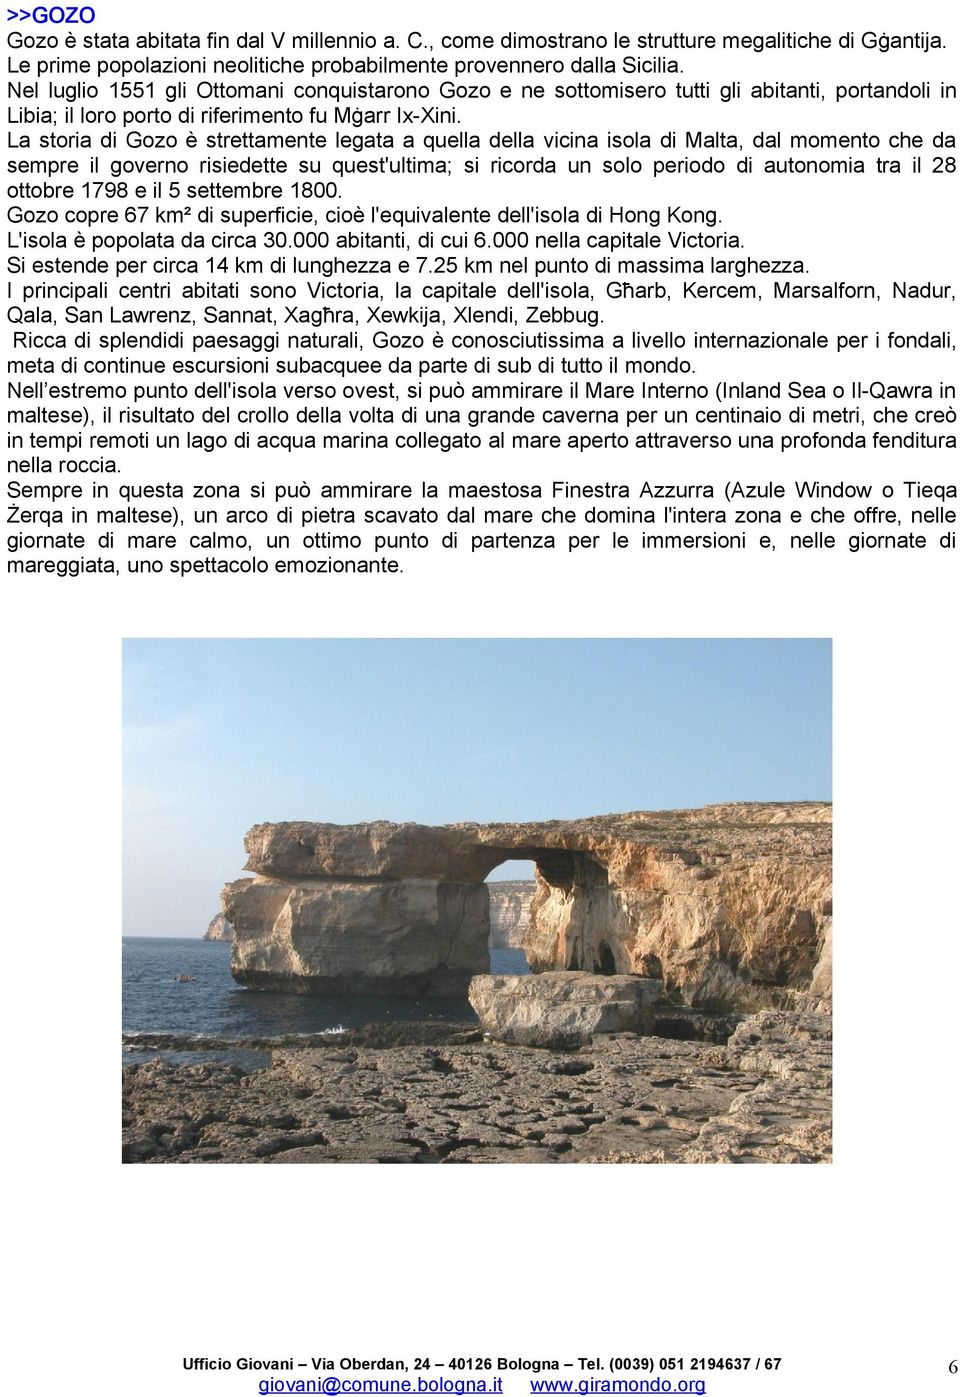 La storia di Gozo è strettamente legata a quella della vicina isola di Malta, dal momento che da sempre il governo risiedette su quest'ultima; si ricorda un solo periodo di autonomia tra il 28